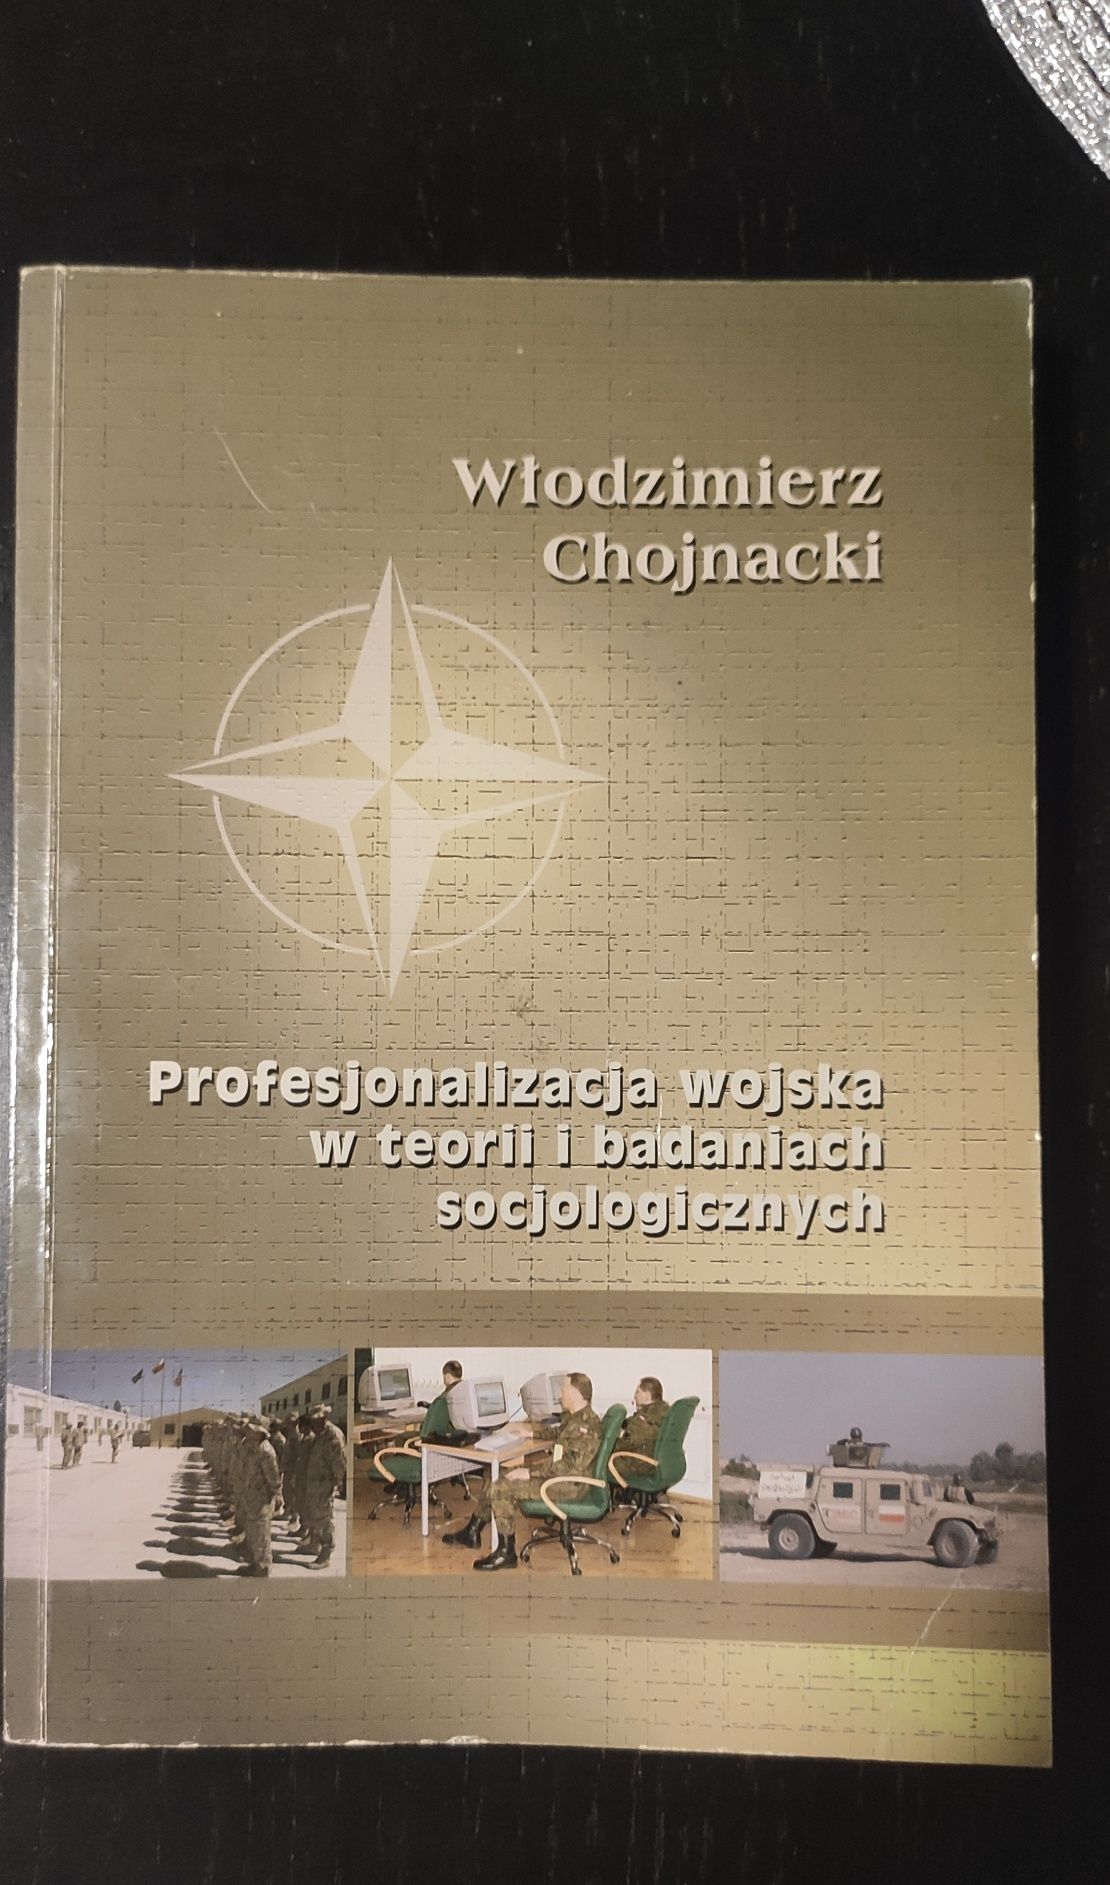 Profesjonalizacja wojska w teorii i badaniach socjologicznychChojnacki